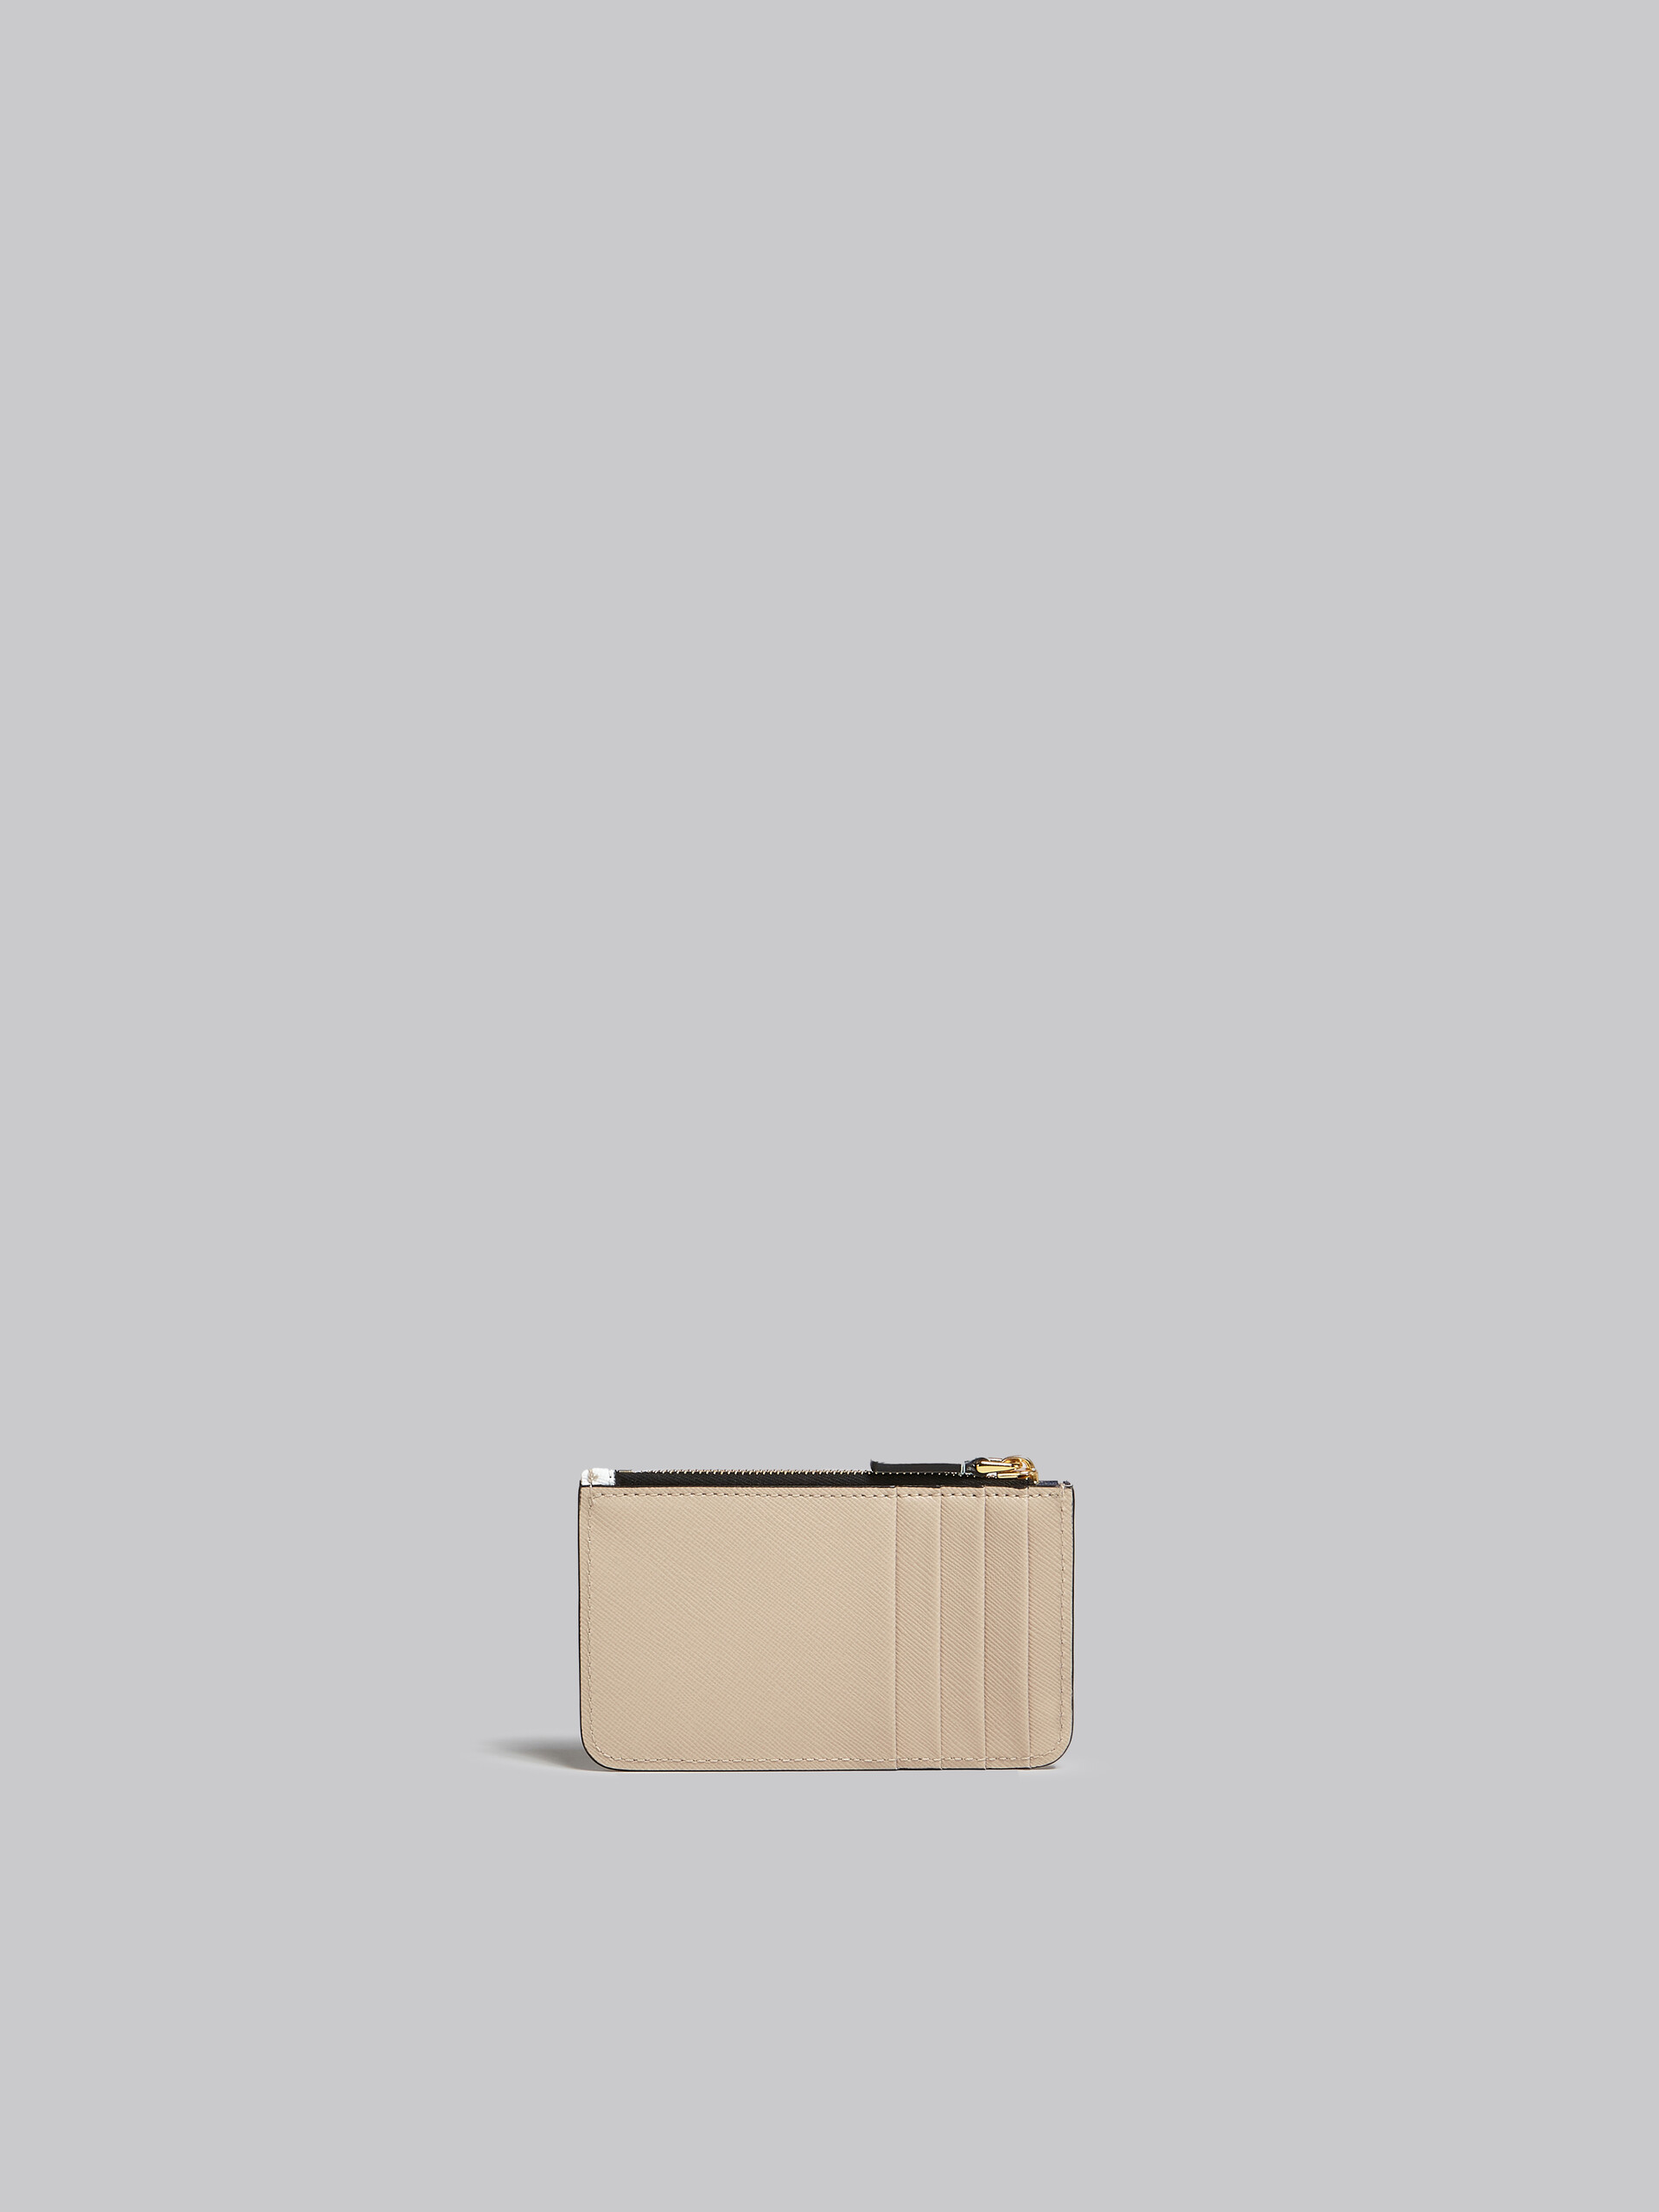 Porte-cartes en cuir saffiano vert clair, blanc et marron - Portefeuilles - Image 3